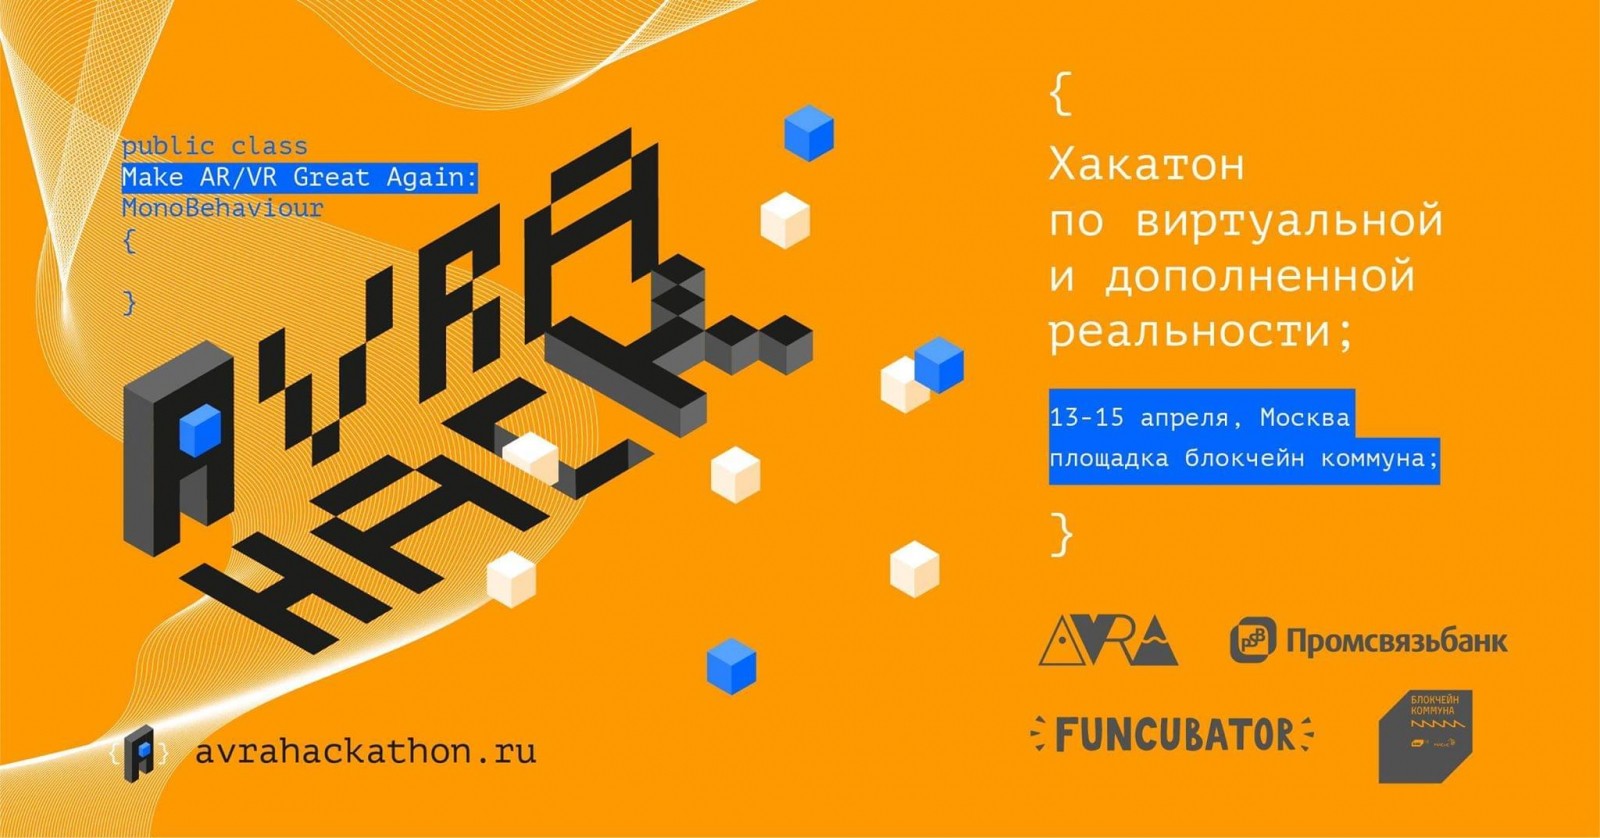 AVRA Hach: Make AR/VR Great Again 13-15 апреля в Москве